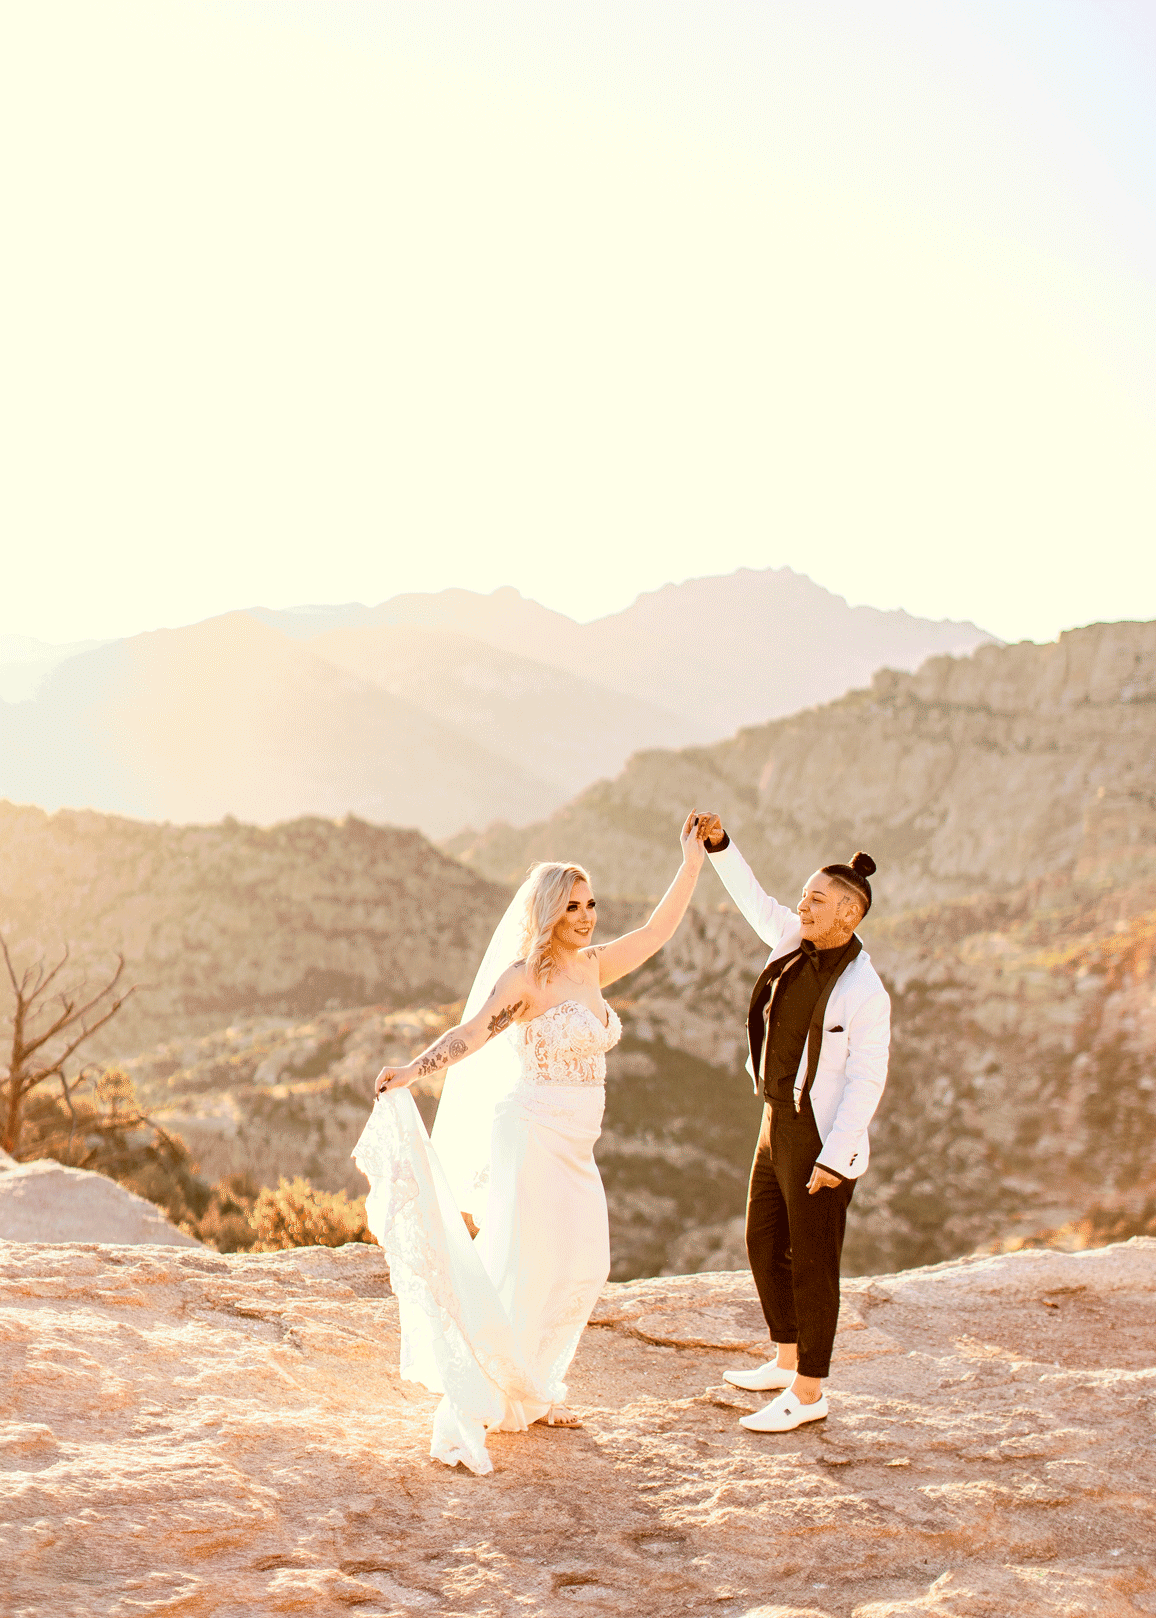 Elopement couple in wedding attire on Mount Lemmon, Tucson, Arizona.